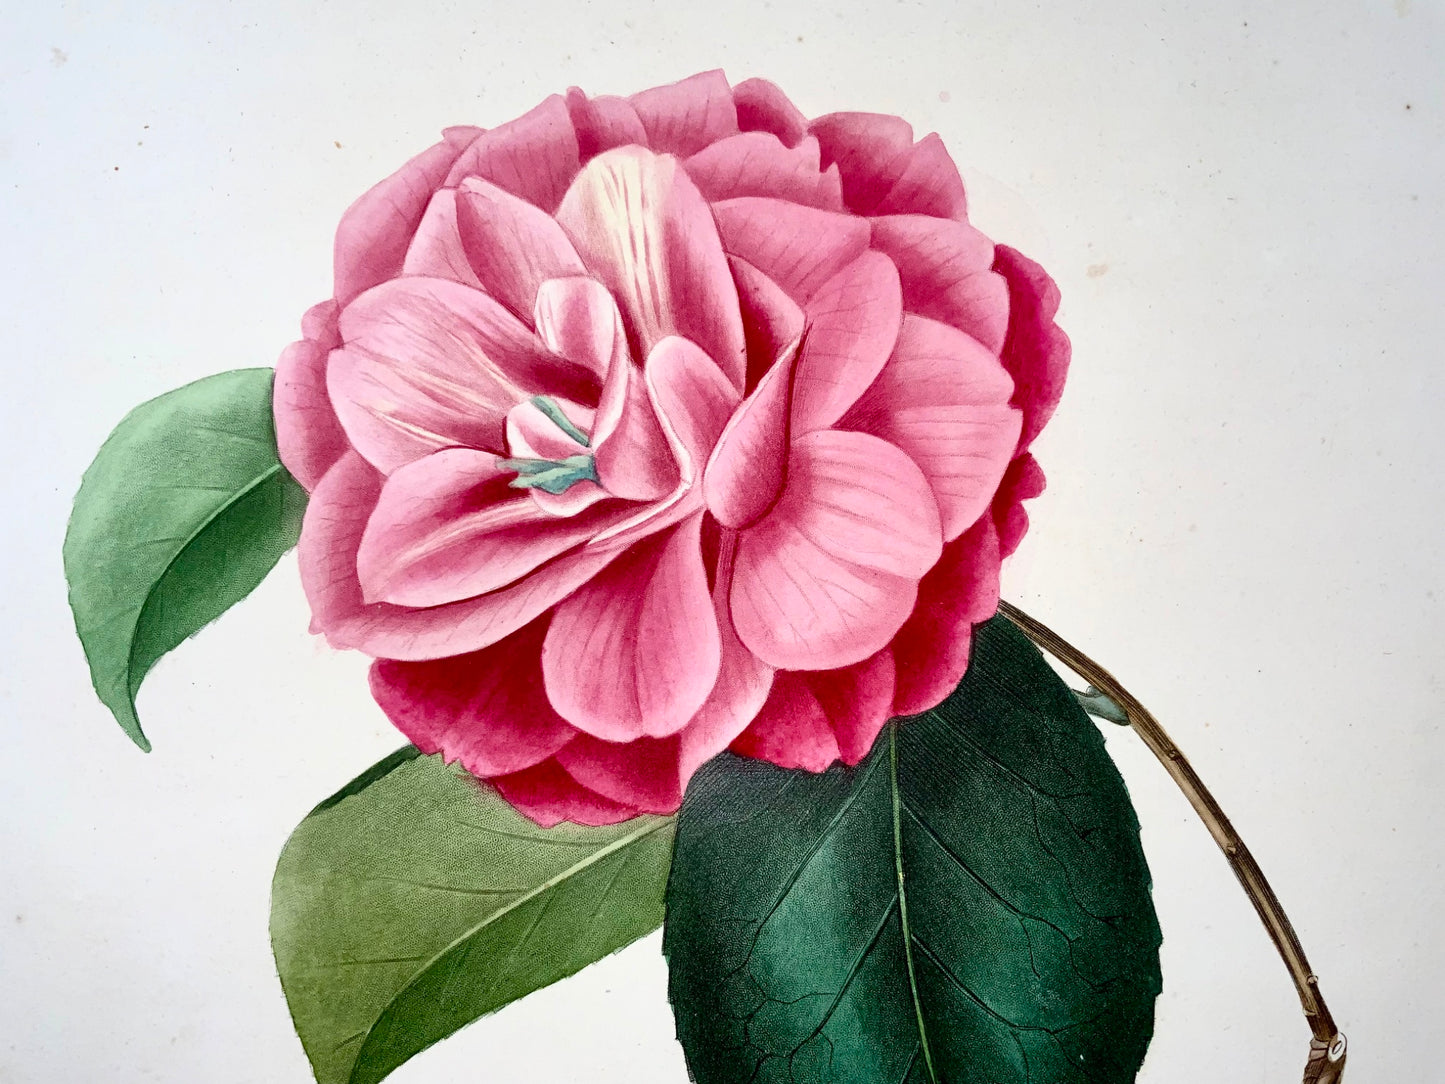 1841 Camellia Venus [Camellia], Dessiné par JJ Jung, Gravé par Oudet, Berlèse, fleurs, botanique